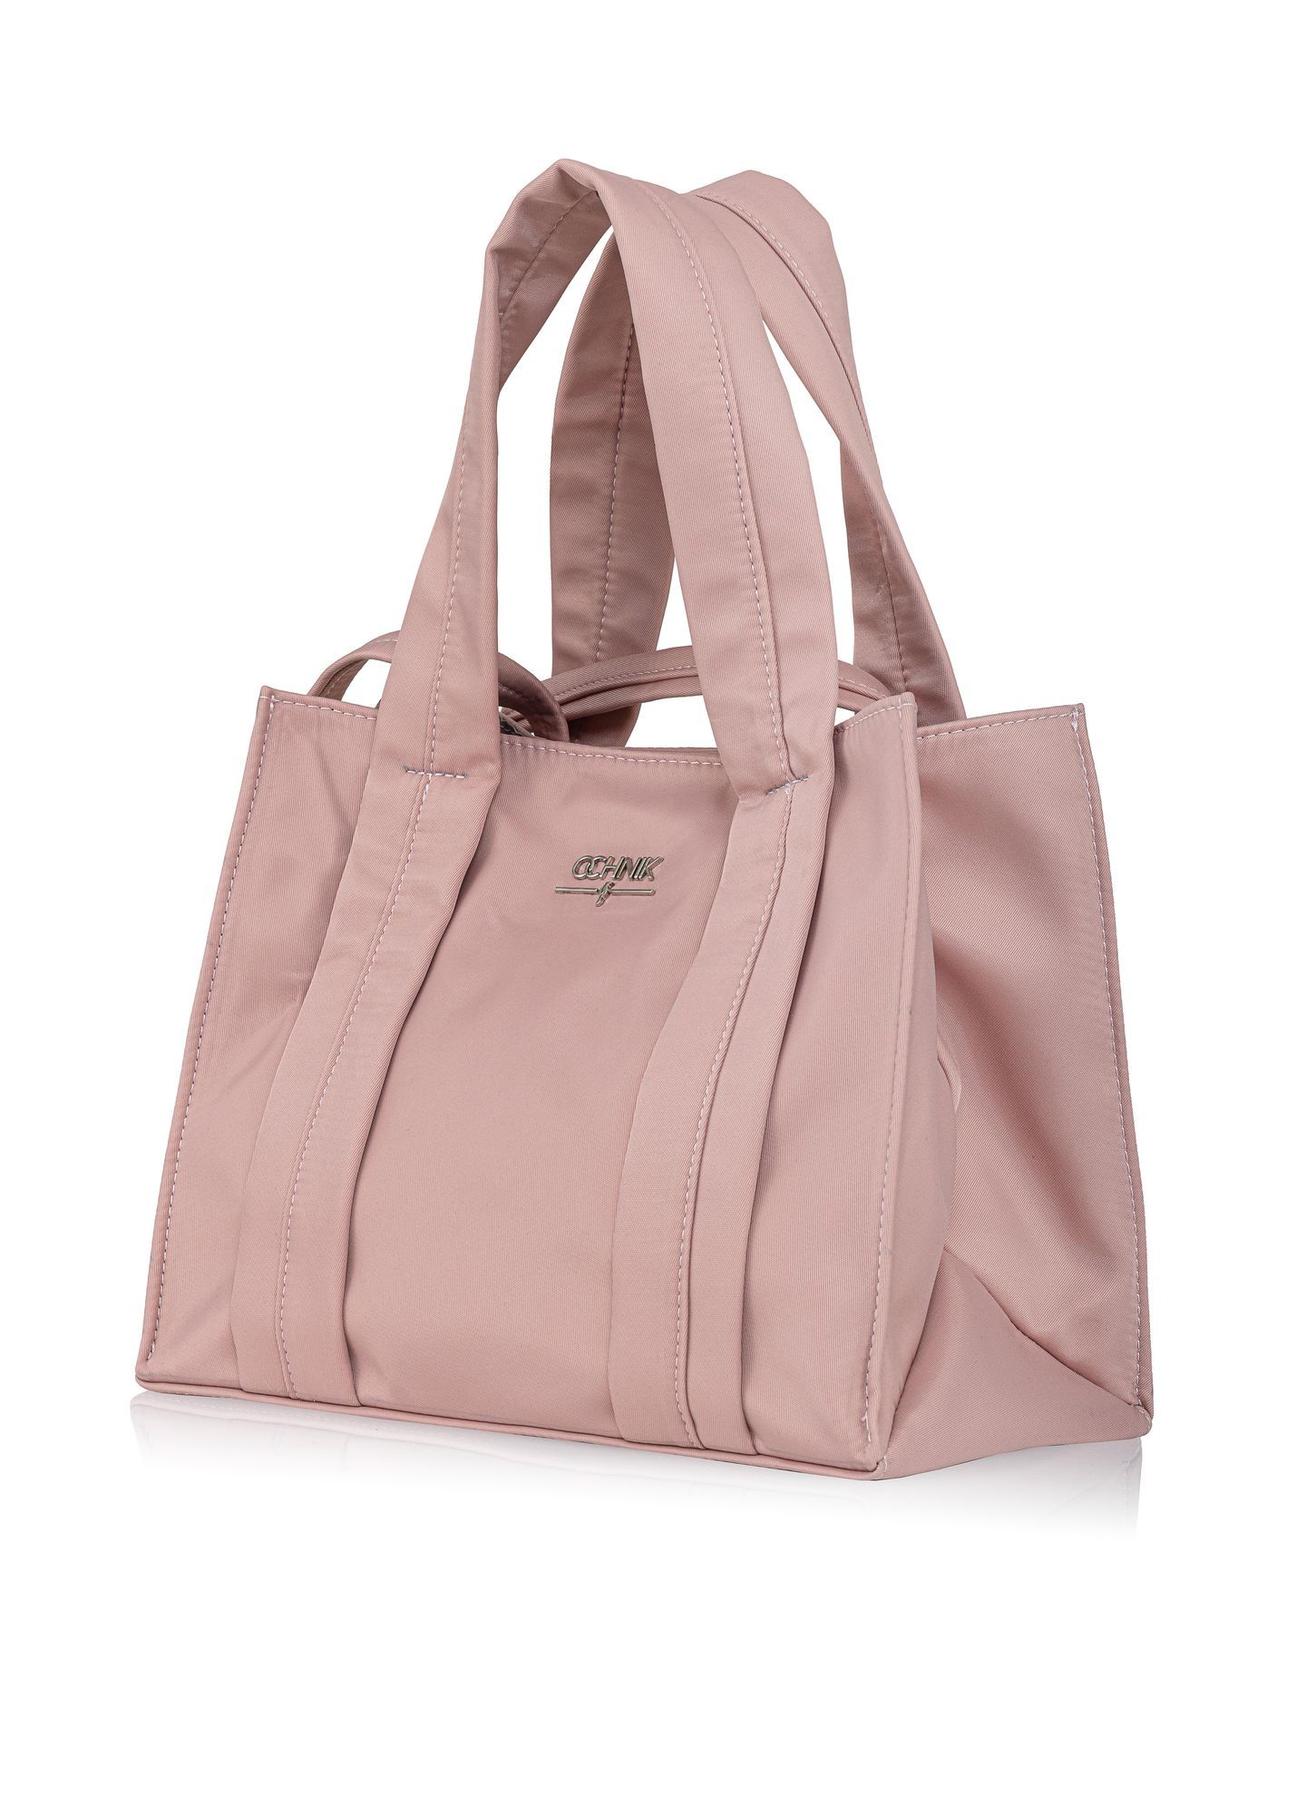 Różowa torebka damska typu tote bag TOREN-0249-31(W23)